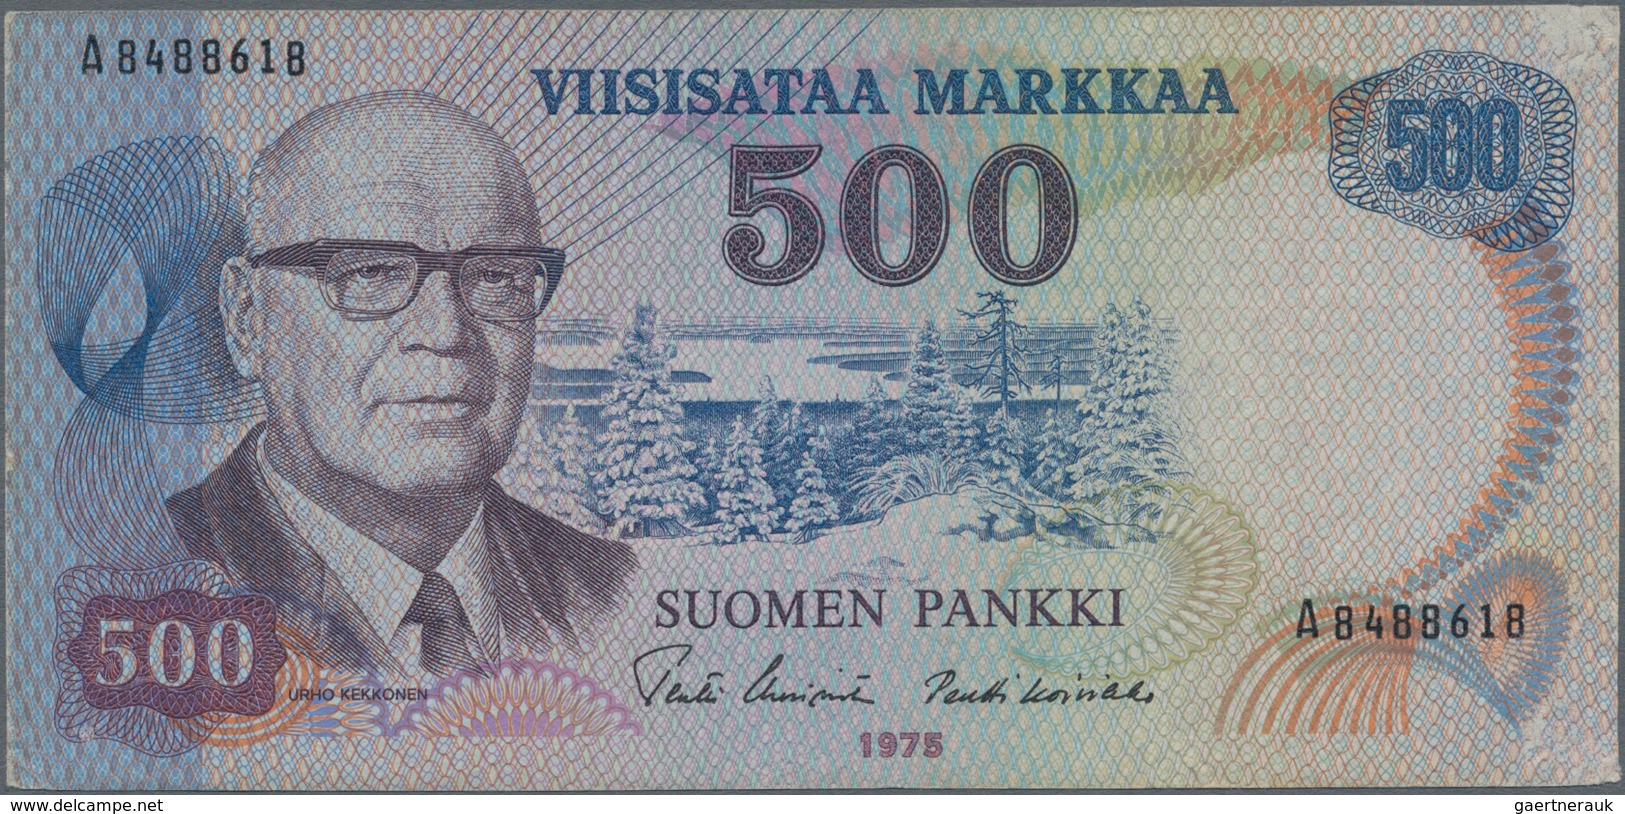 Finland / Finnland: Pair With 100 Markkaa 1945 Litt.B, P.88 (VF) And 500 Markkaa 1975 P.110 (VF). (2 - Finnland